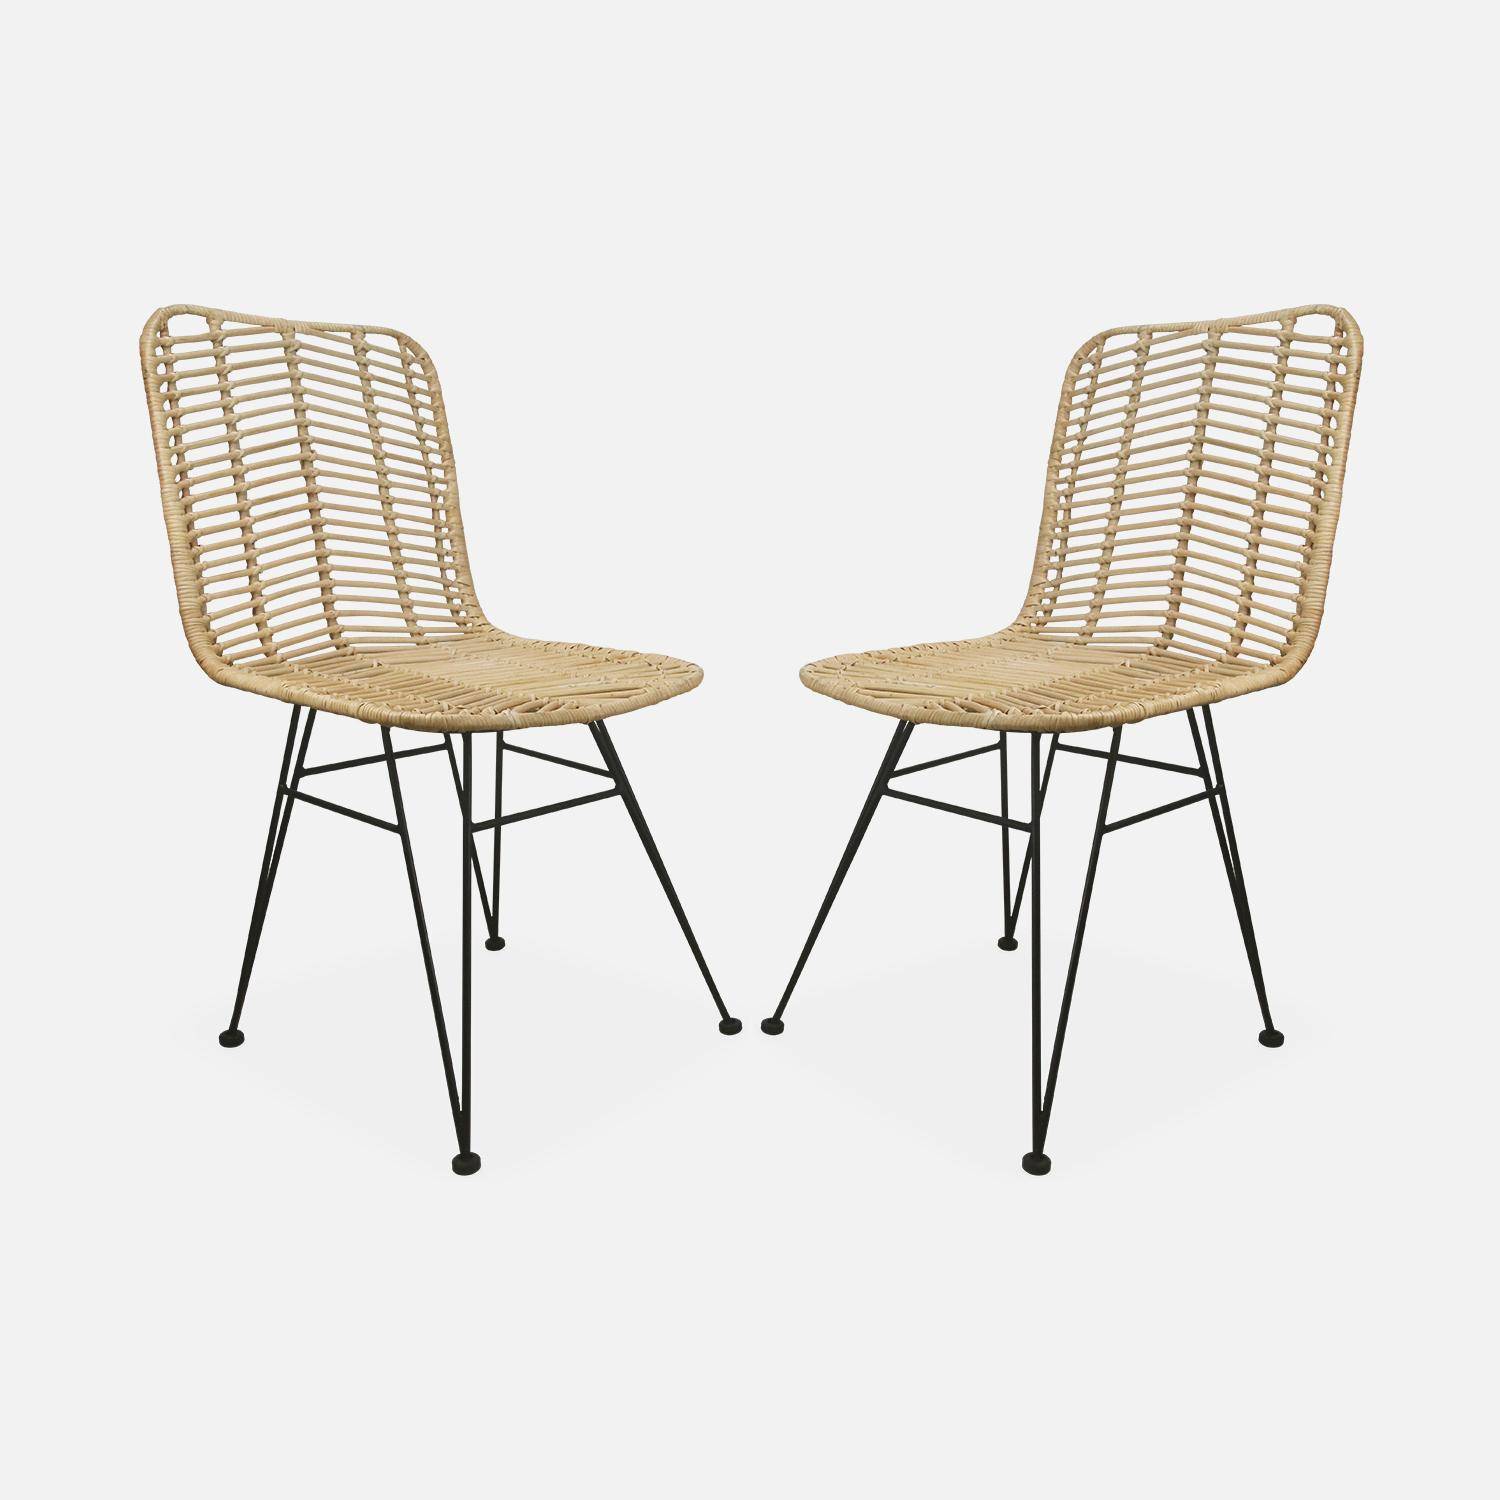 Dos sillas de ratán natural y metal, cojines beige - Cahya,sweeek,Photo5